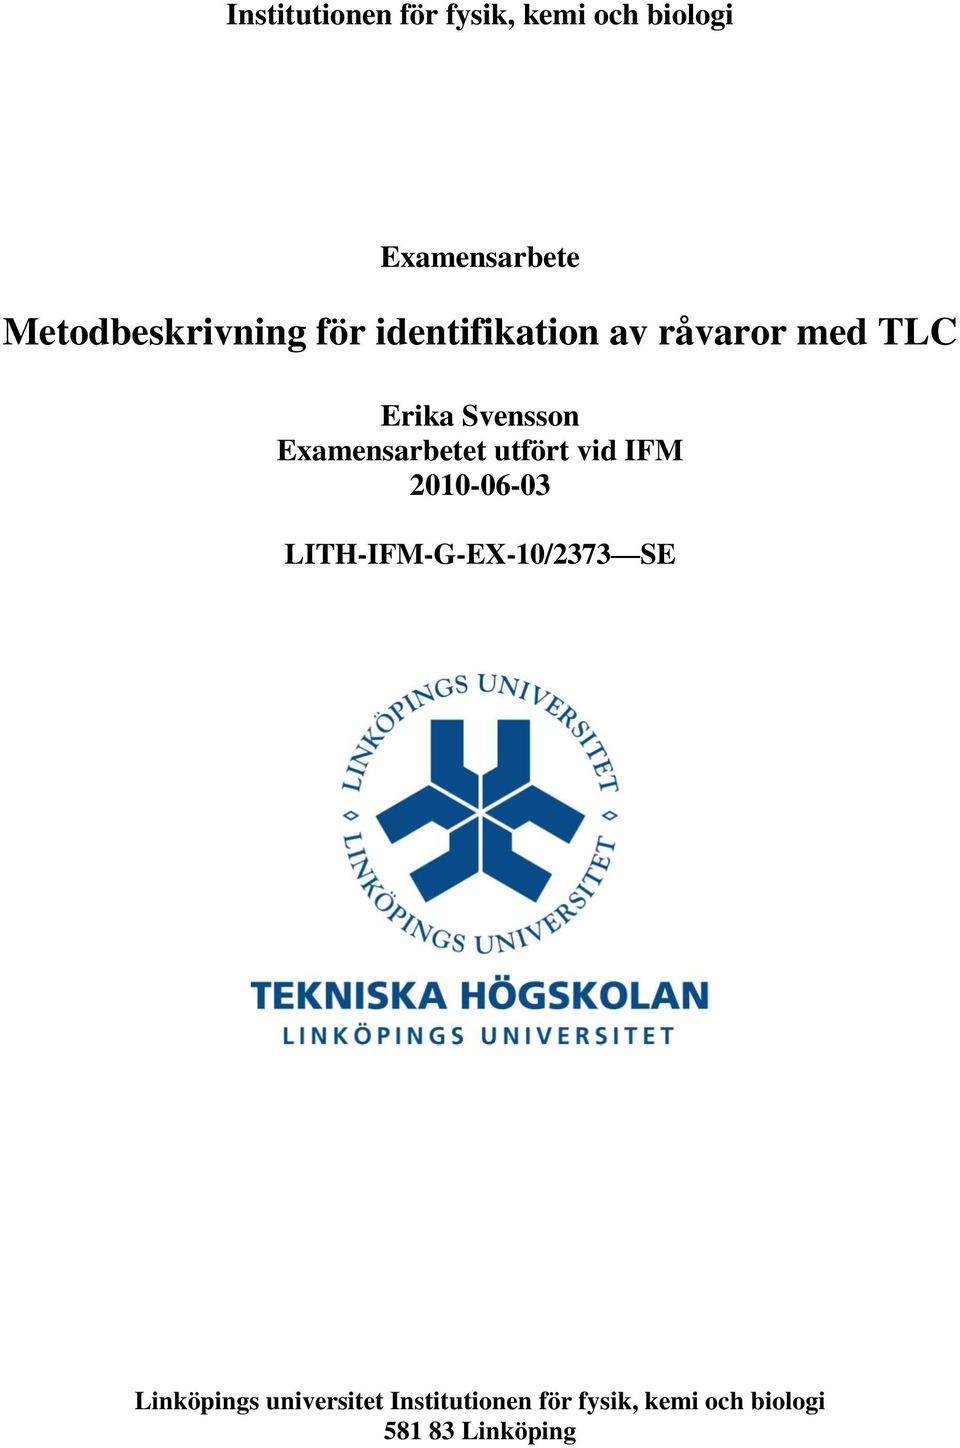 Svensson Examensarbetet utfört vid IFM 2010-06-03